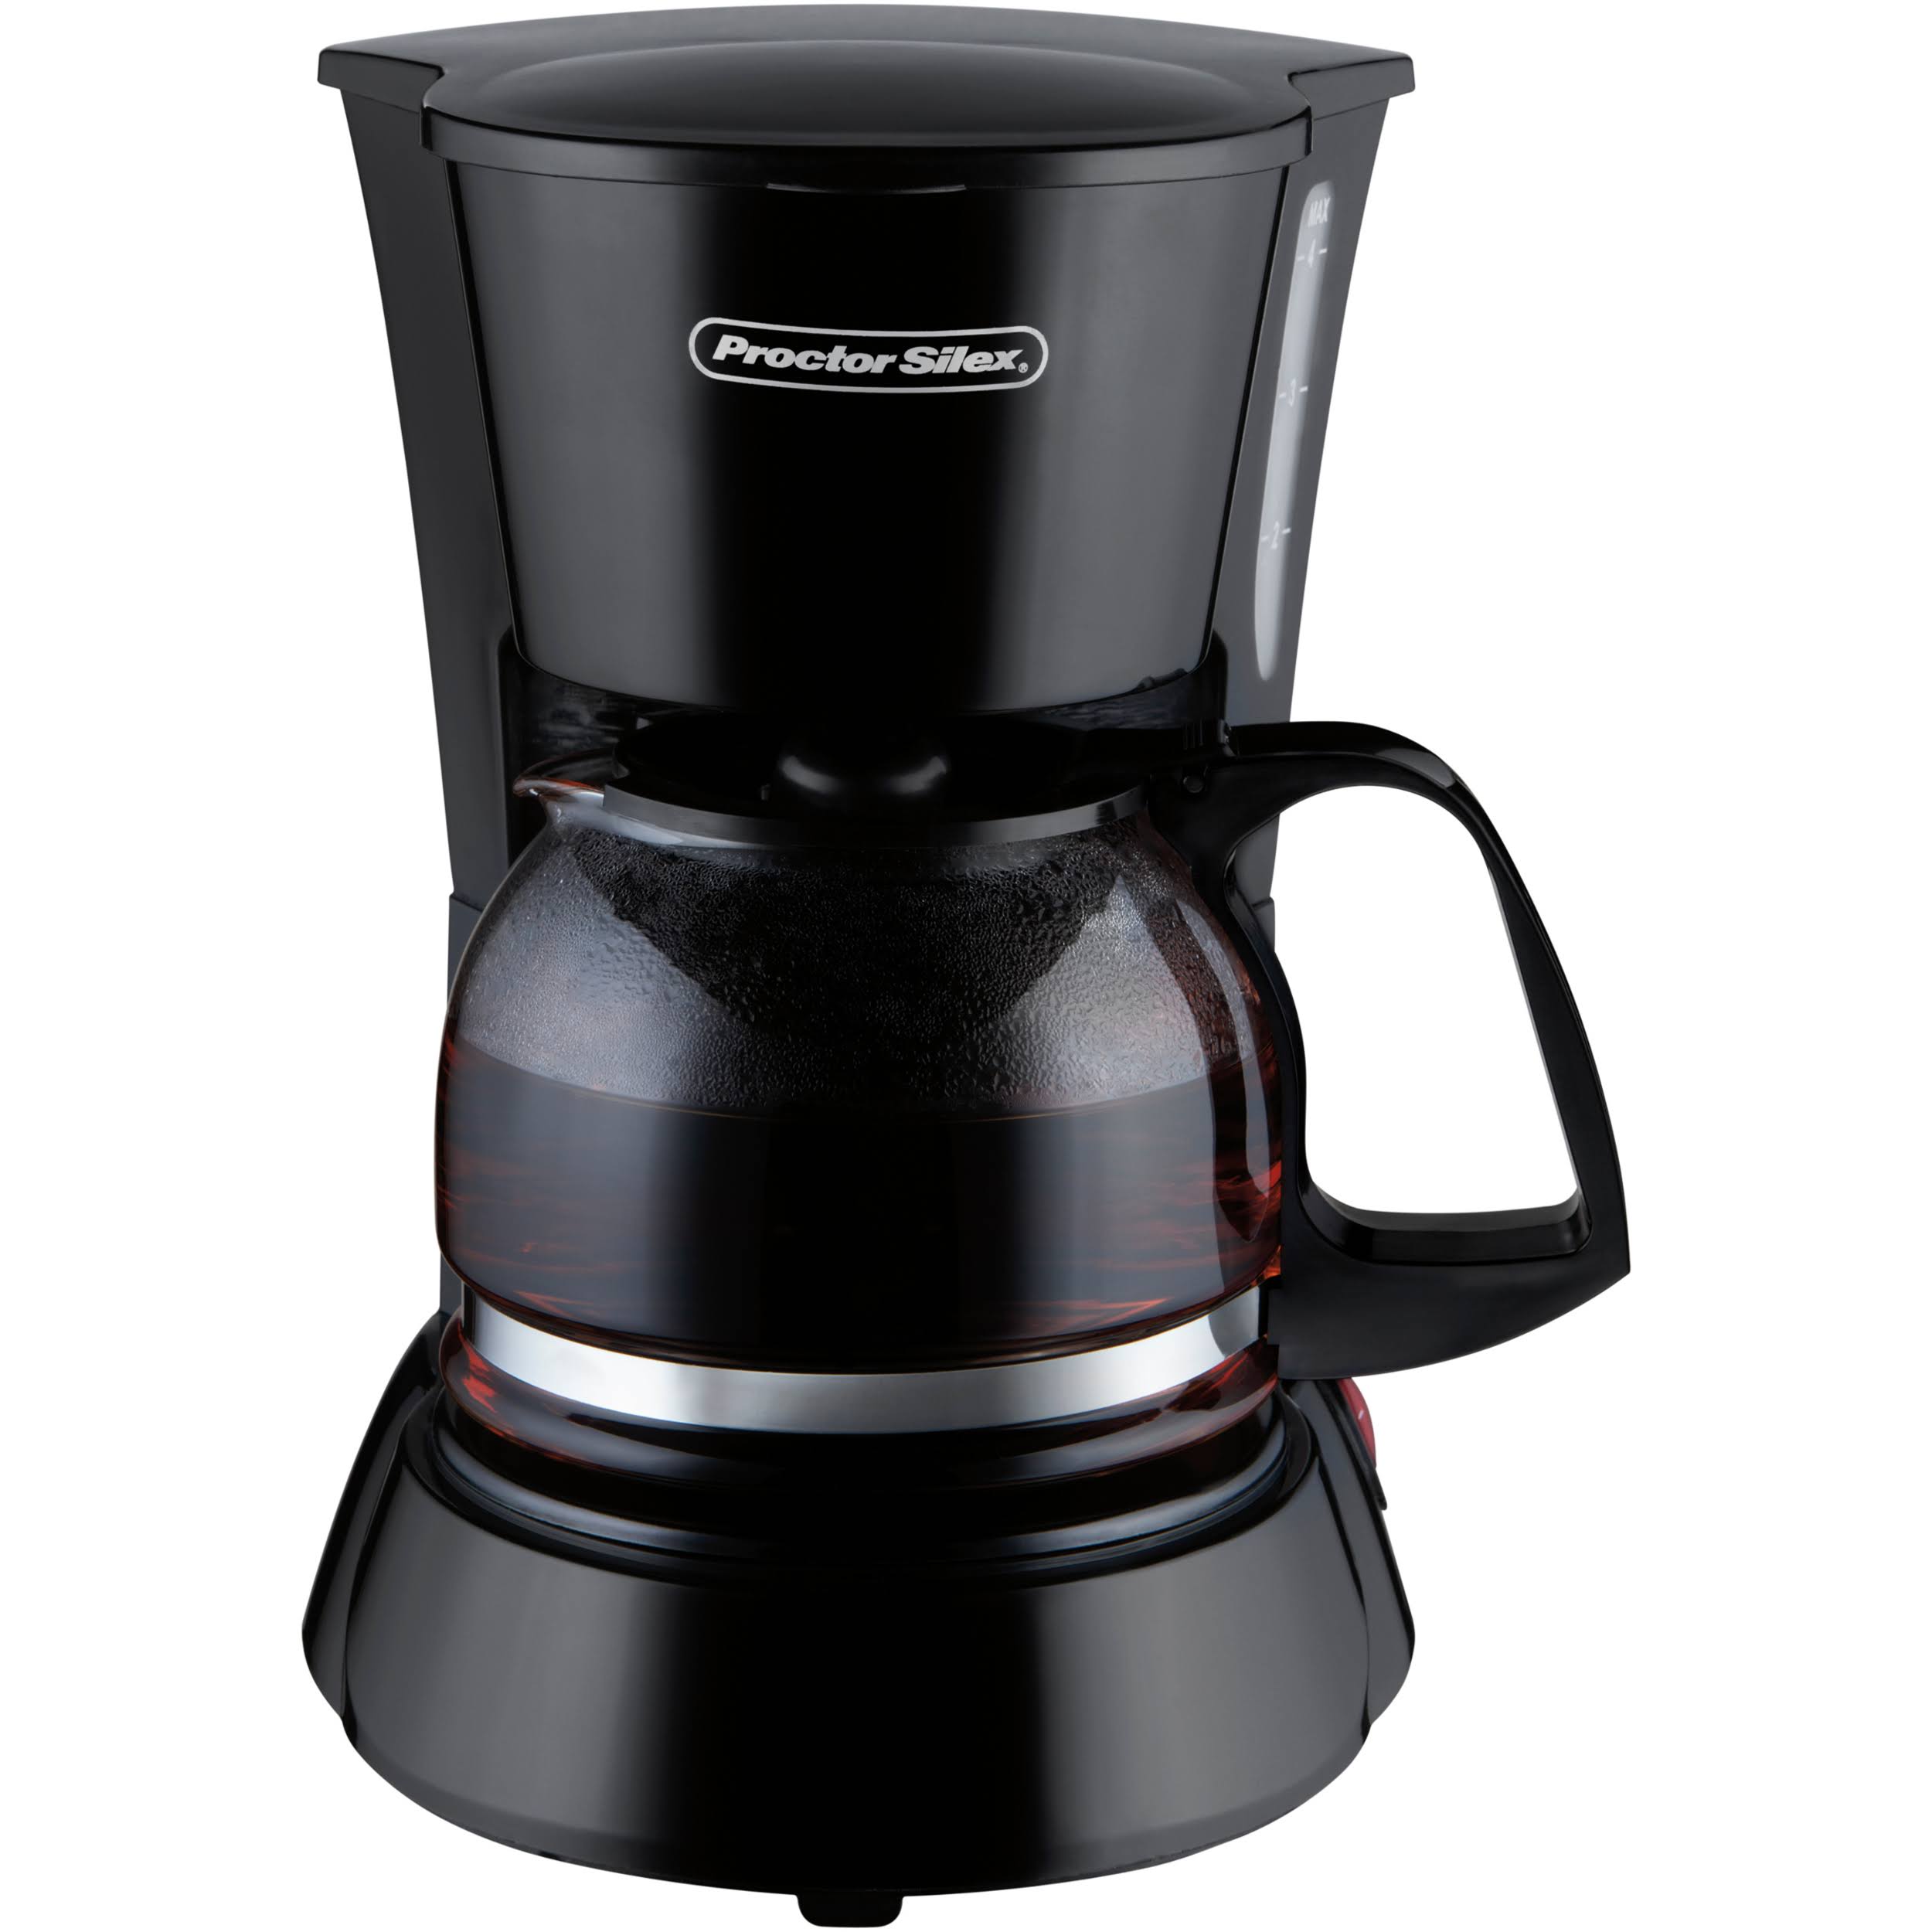 Proctor Silex 48138 Coffeemaker - 4 Cup